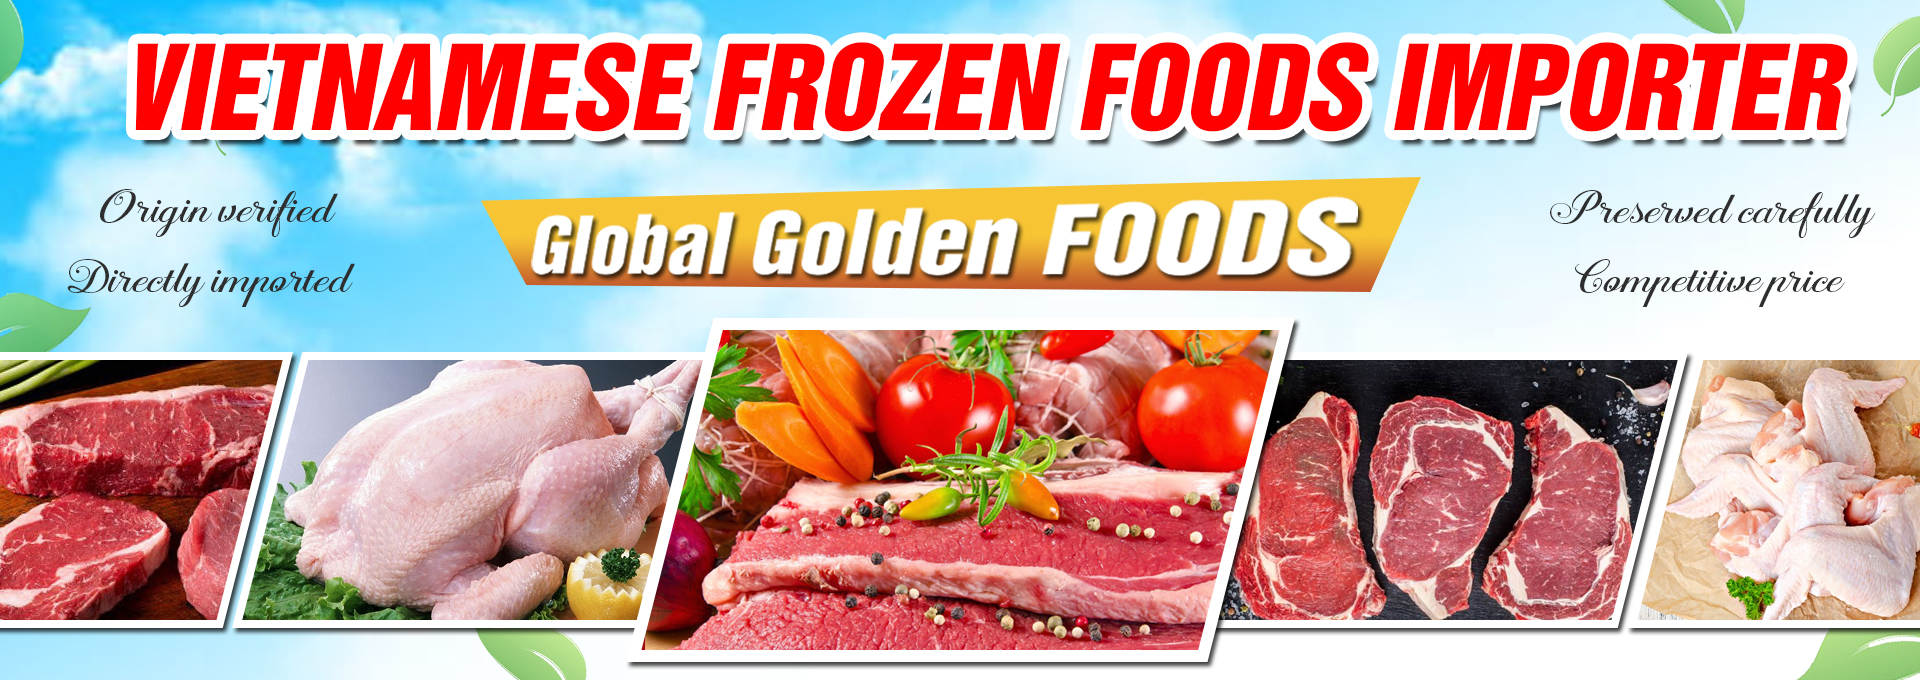 GLOBAL GOLDEN FOODS IMPORT & EXPORT CO., LTD.